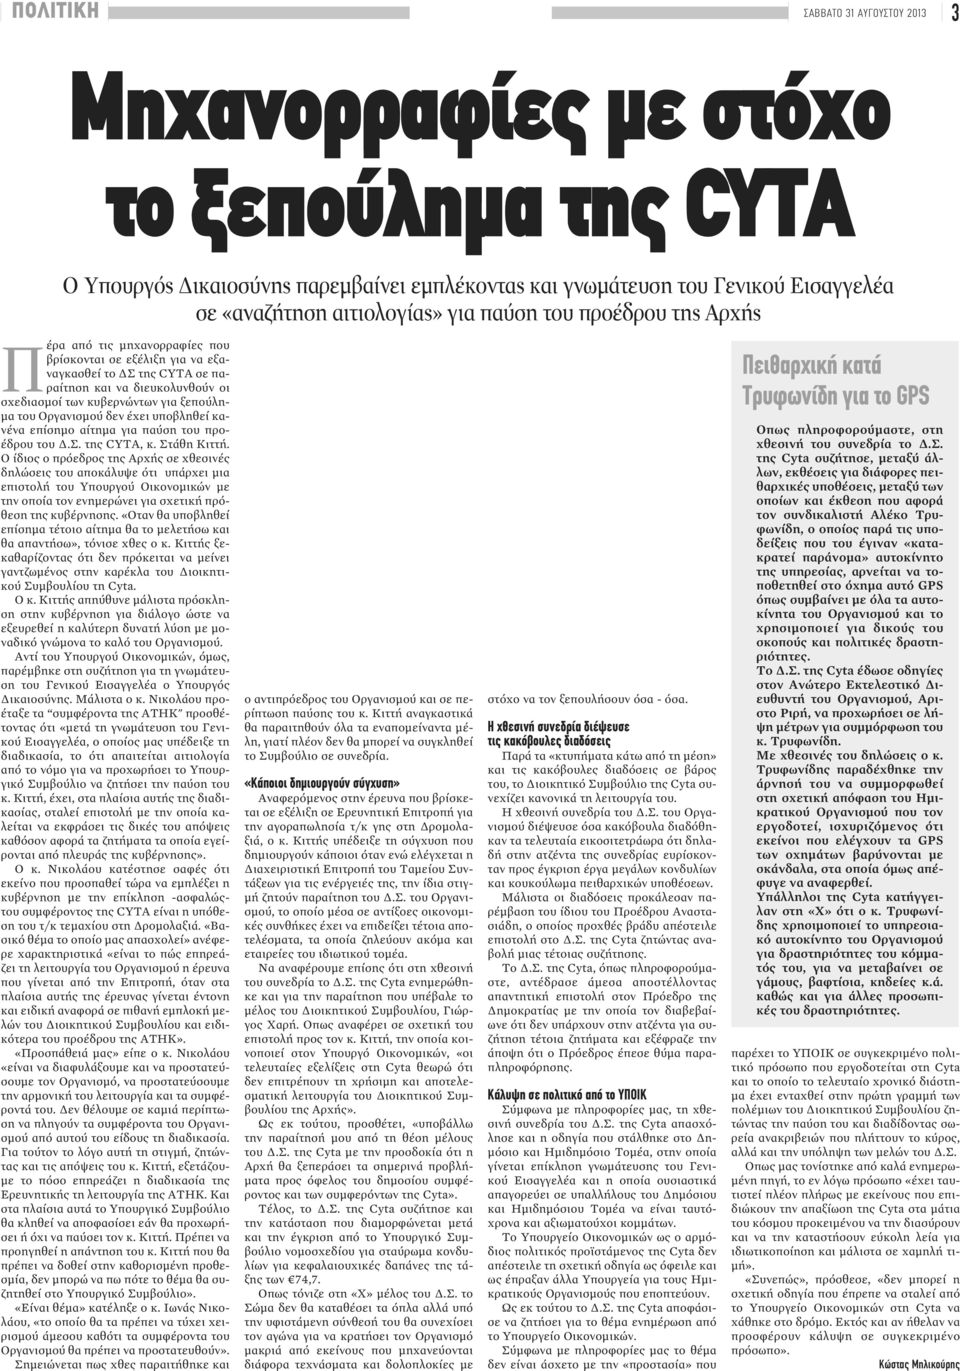 Οργανισμού δεν έχει υποβληθεί κανένα επίσημο αίτημα για παύση του προέδρου του Δ.Σ. της CYTA, κ. Στάθη Κιττή.